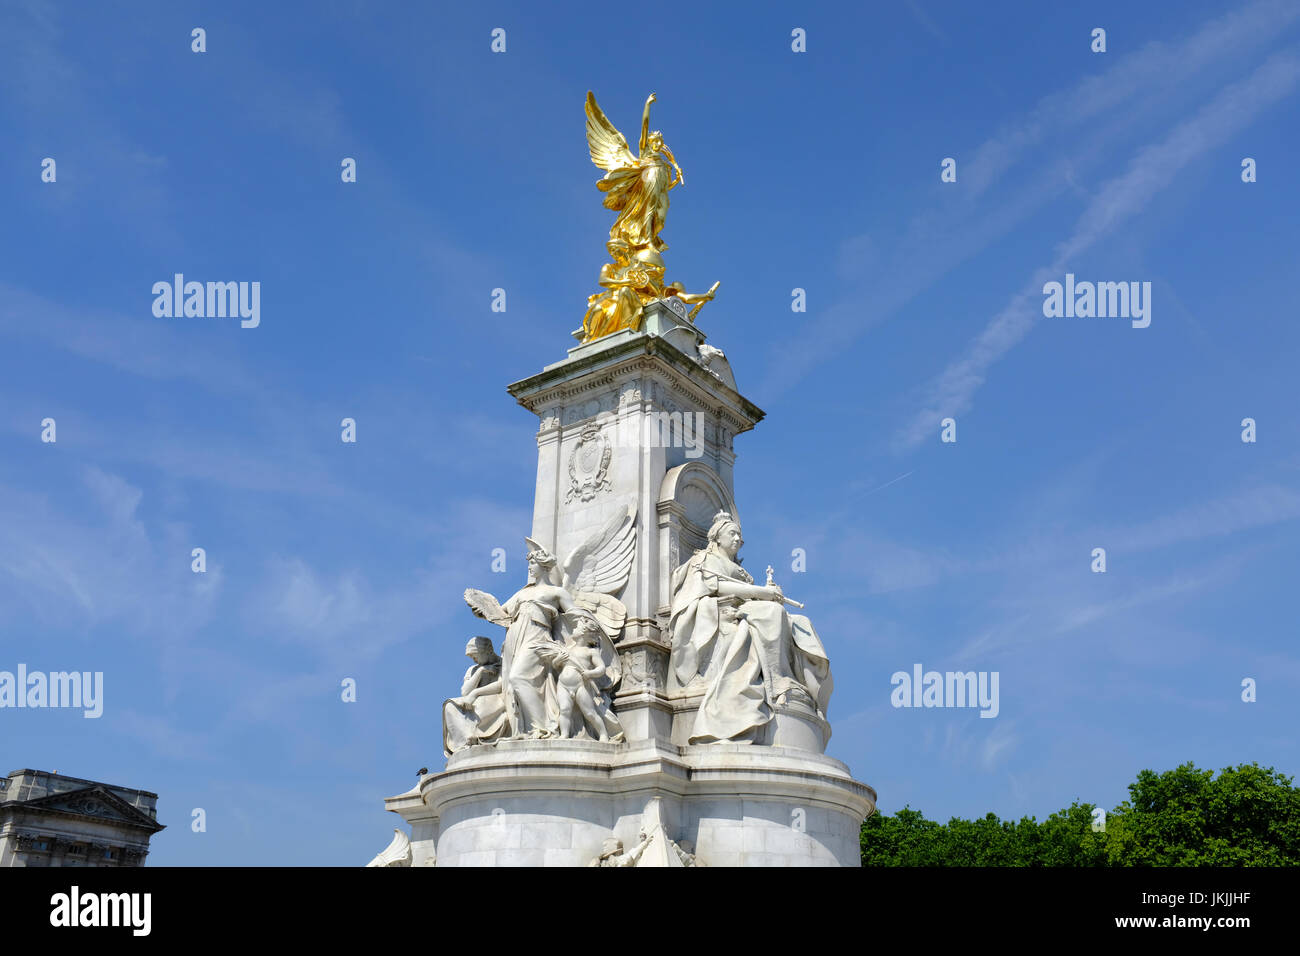 La regina Victoria Memorial in St James Park di fronte a Buckingham Palace, London, England, Regno Unito Foto Stock